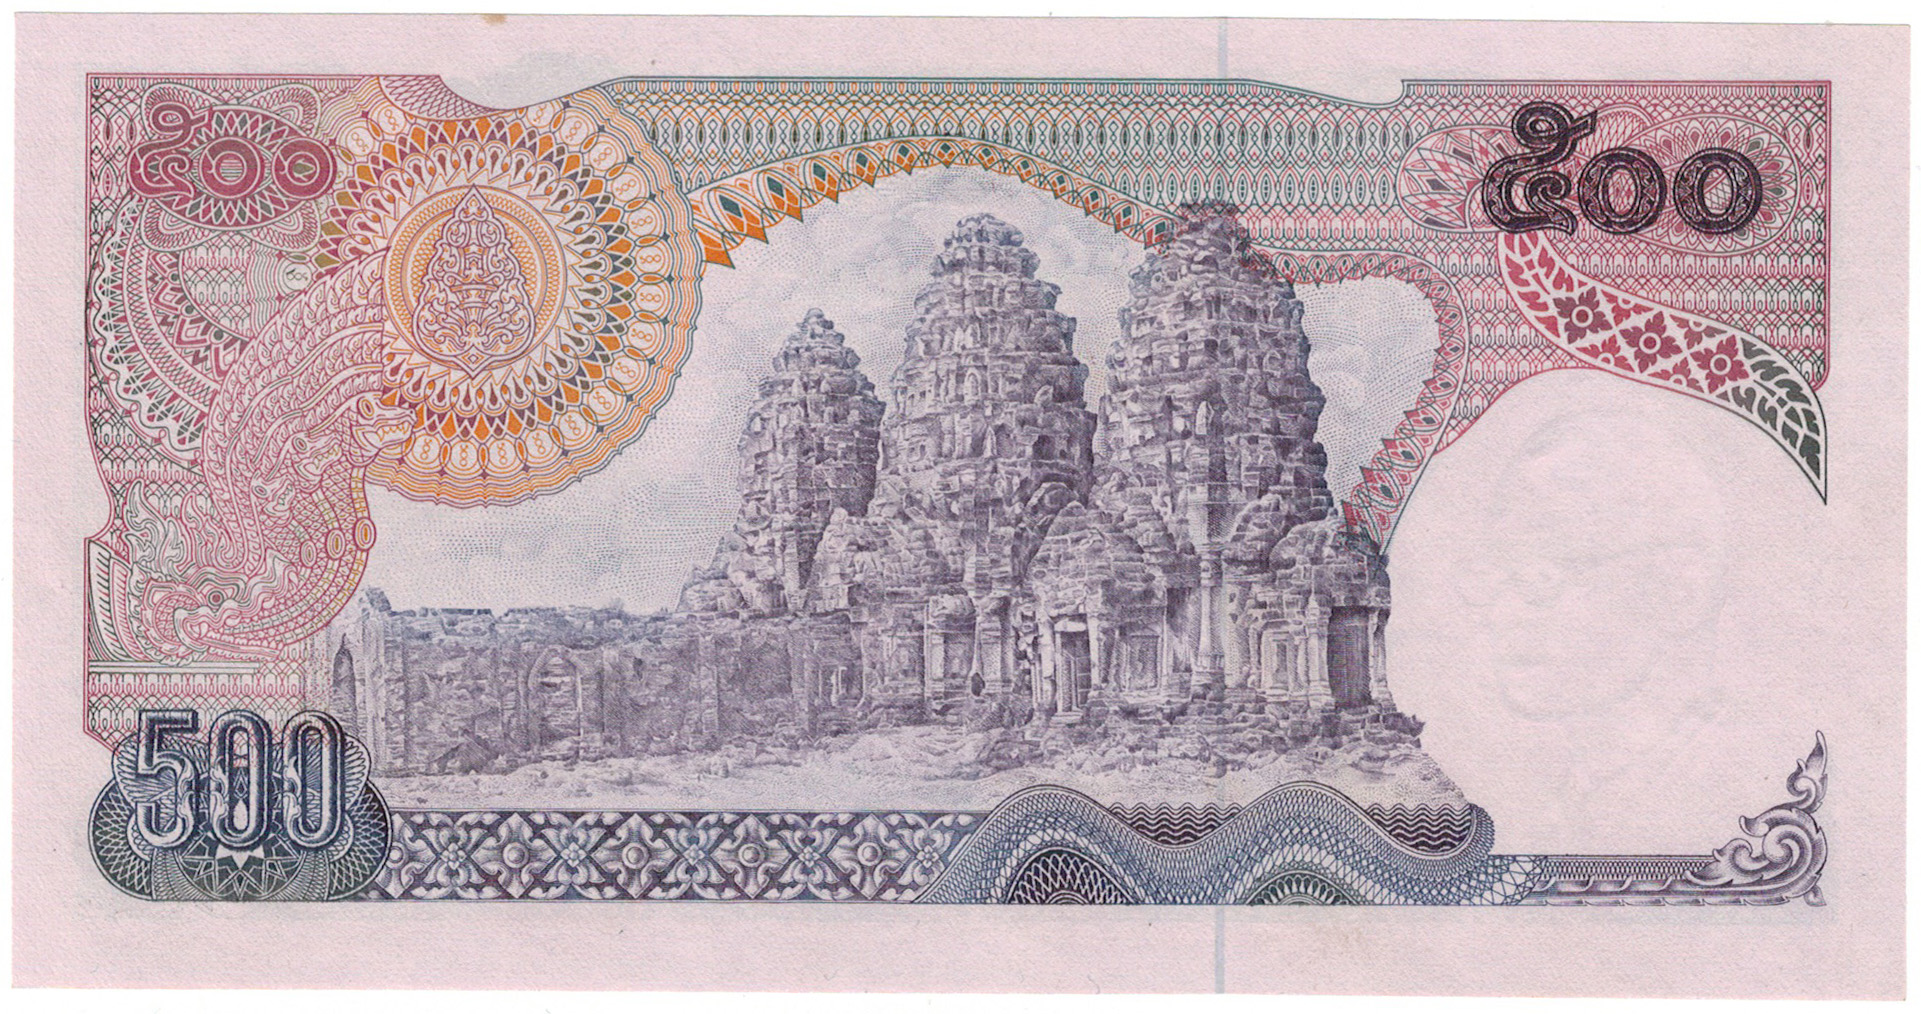 500 бат. Тайланд банкнота 500 бат. Банкнота Таиланда номинал 500 1988 года. Боны Тайланда. Деньги Тайланда 500.